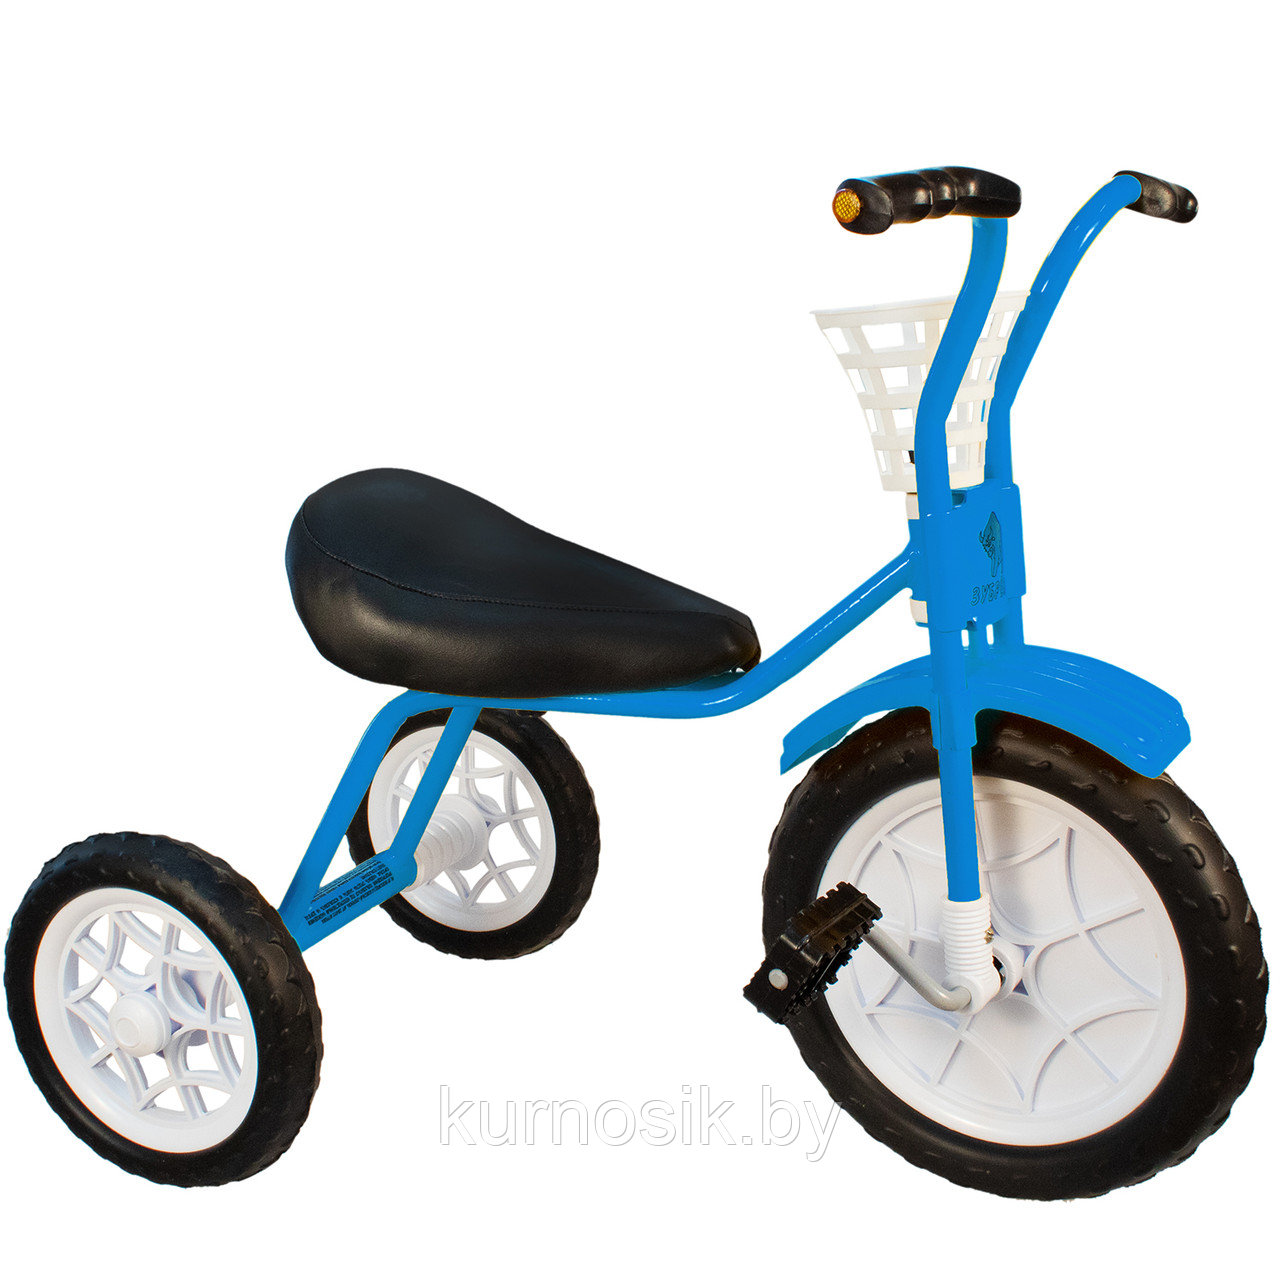 Трехколесный велосипед детский "Зубренок" (арт.526-611) синий